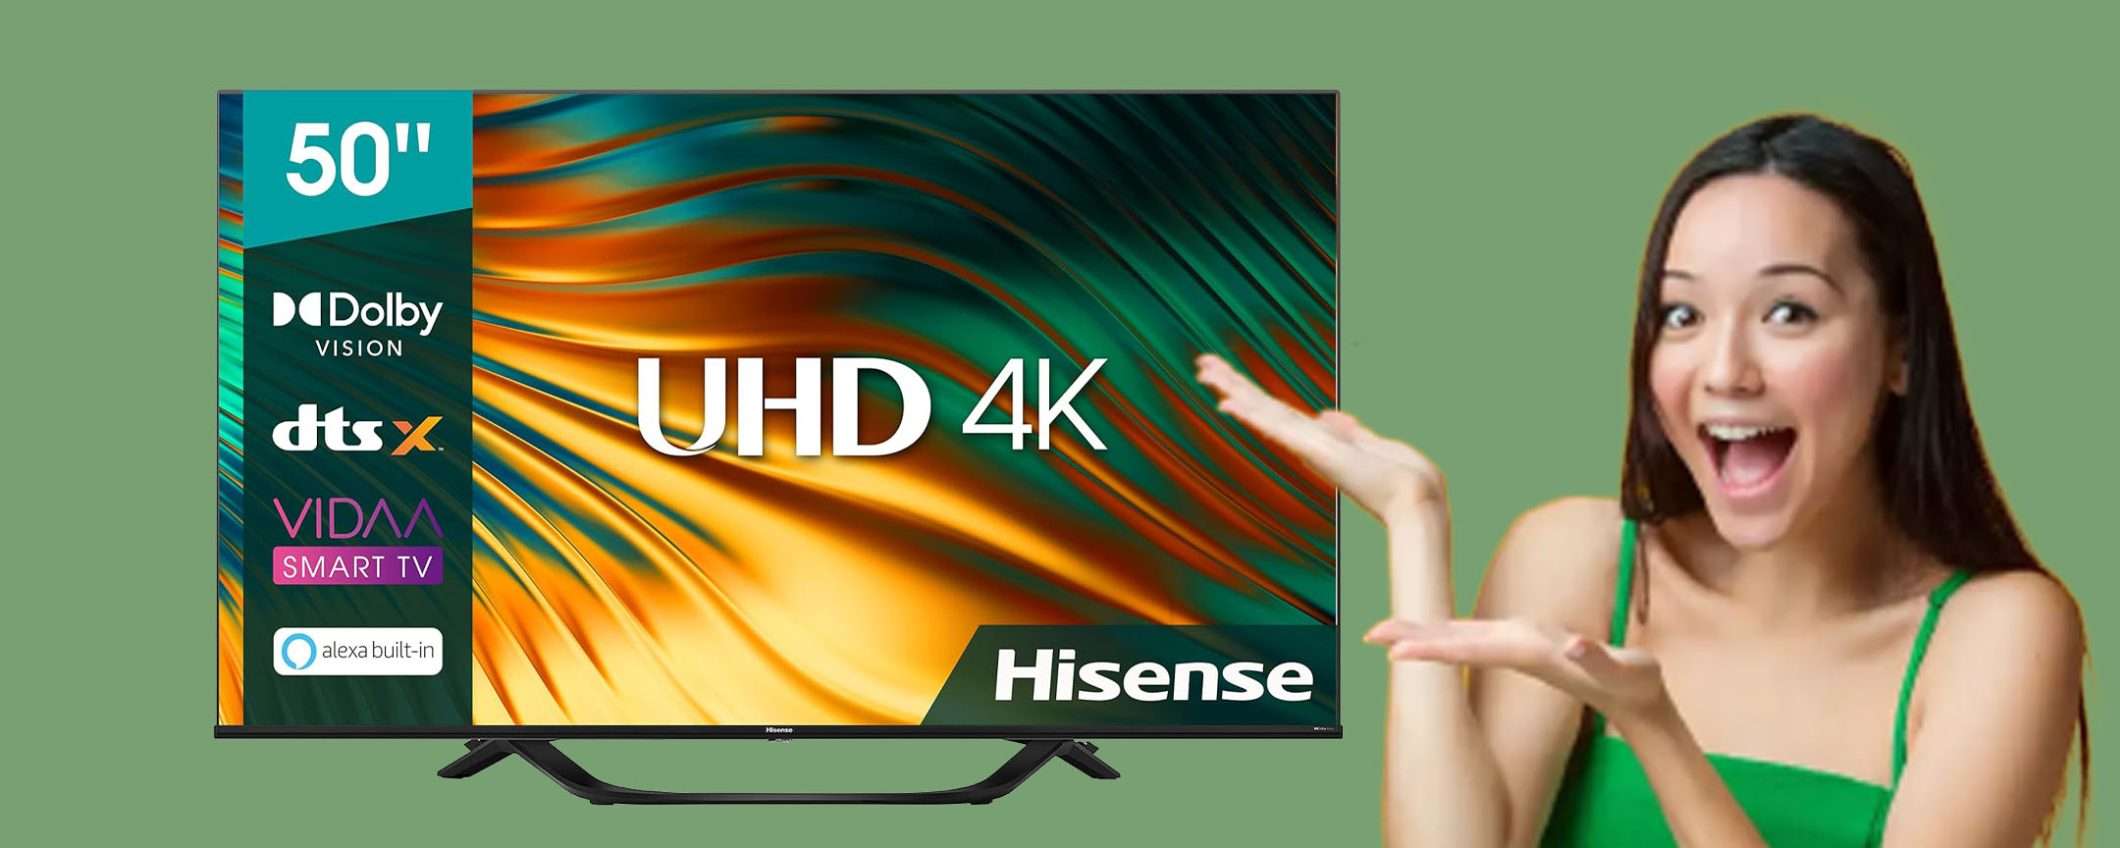 Smart TV Hisense UHD 4K da 50